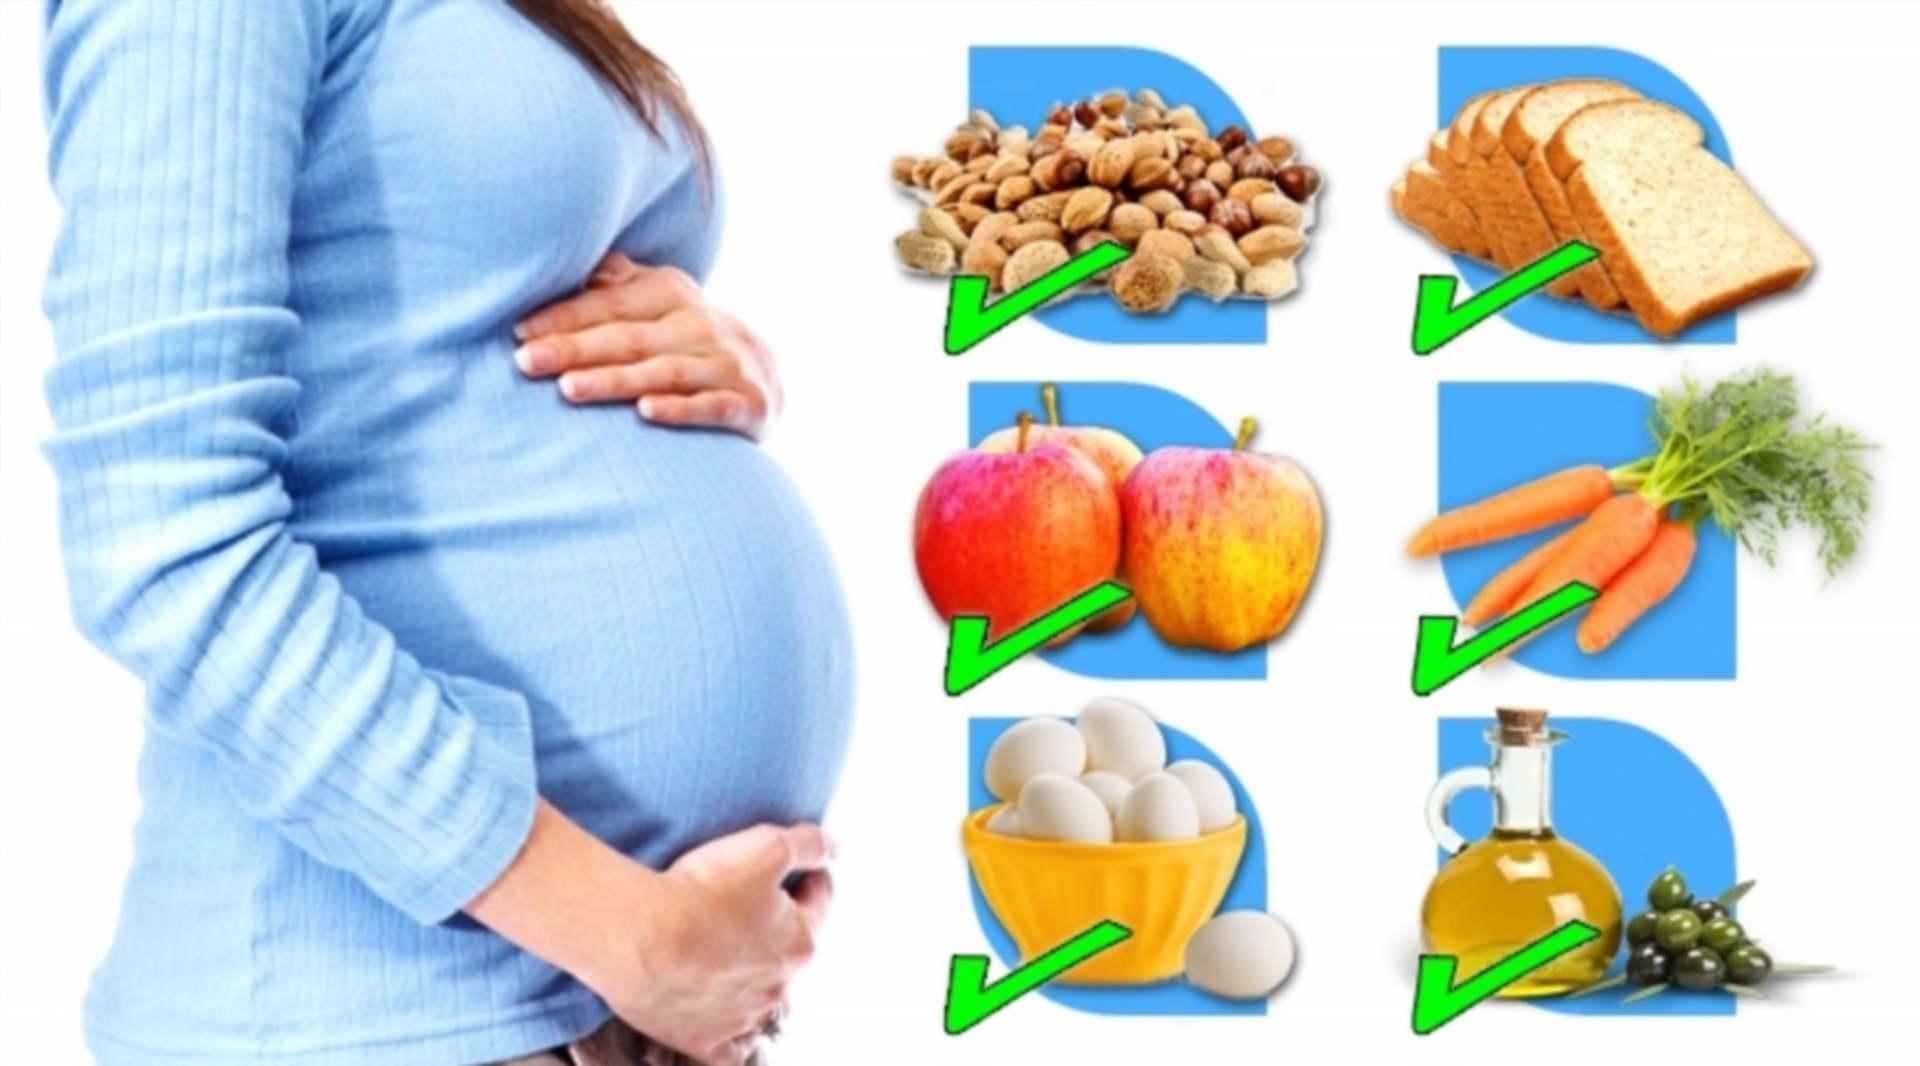 5 month pregnancy diet